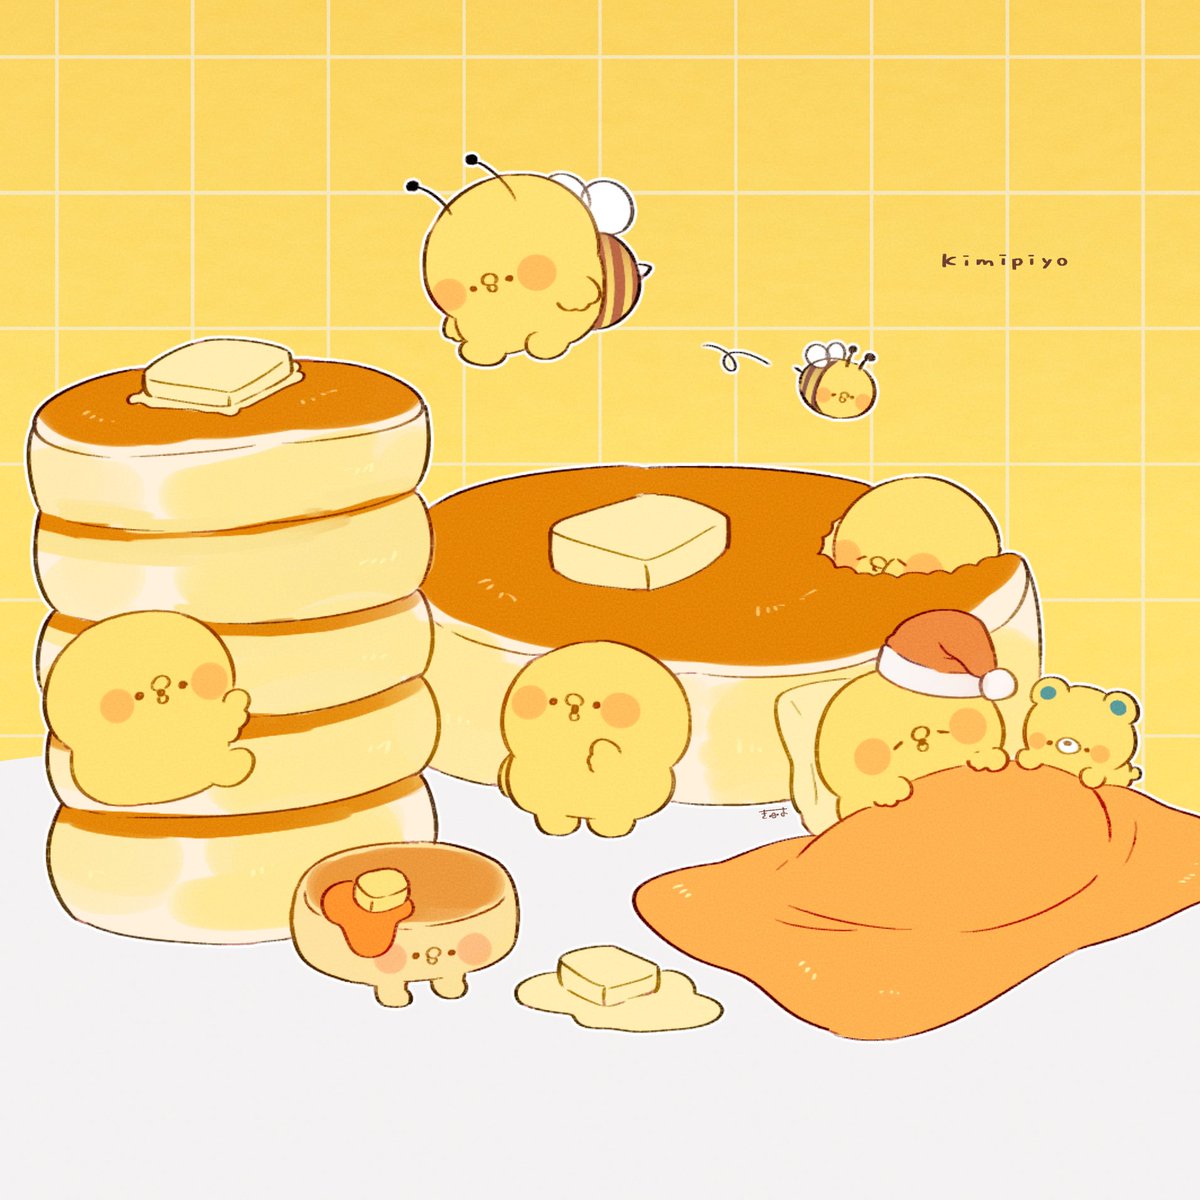 「パンケーキといっしょ!  #きみピヨ」|てんみやきよのイラスト